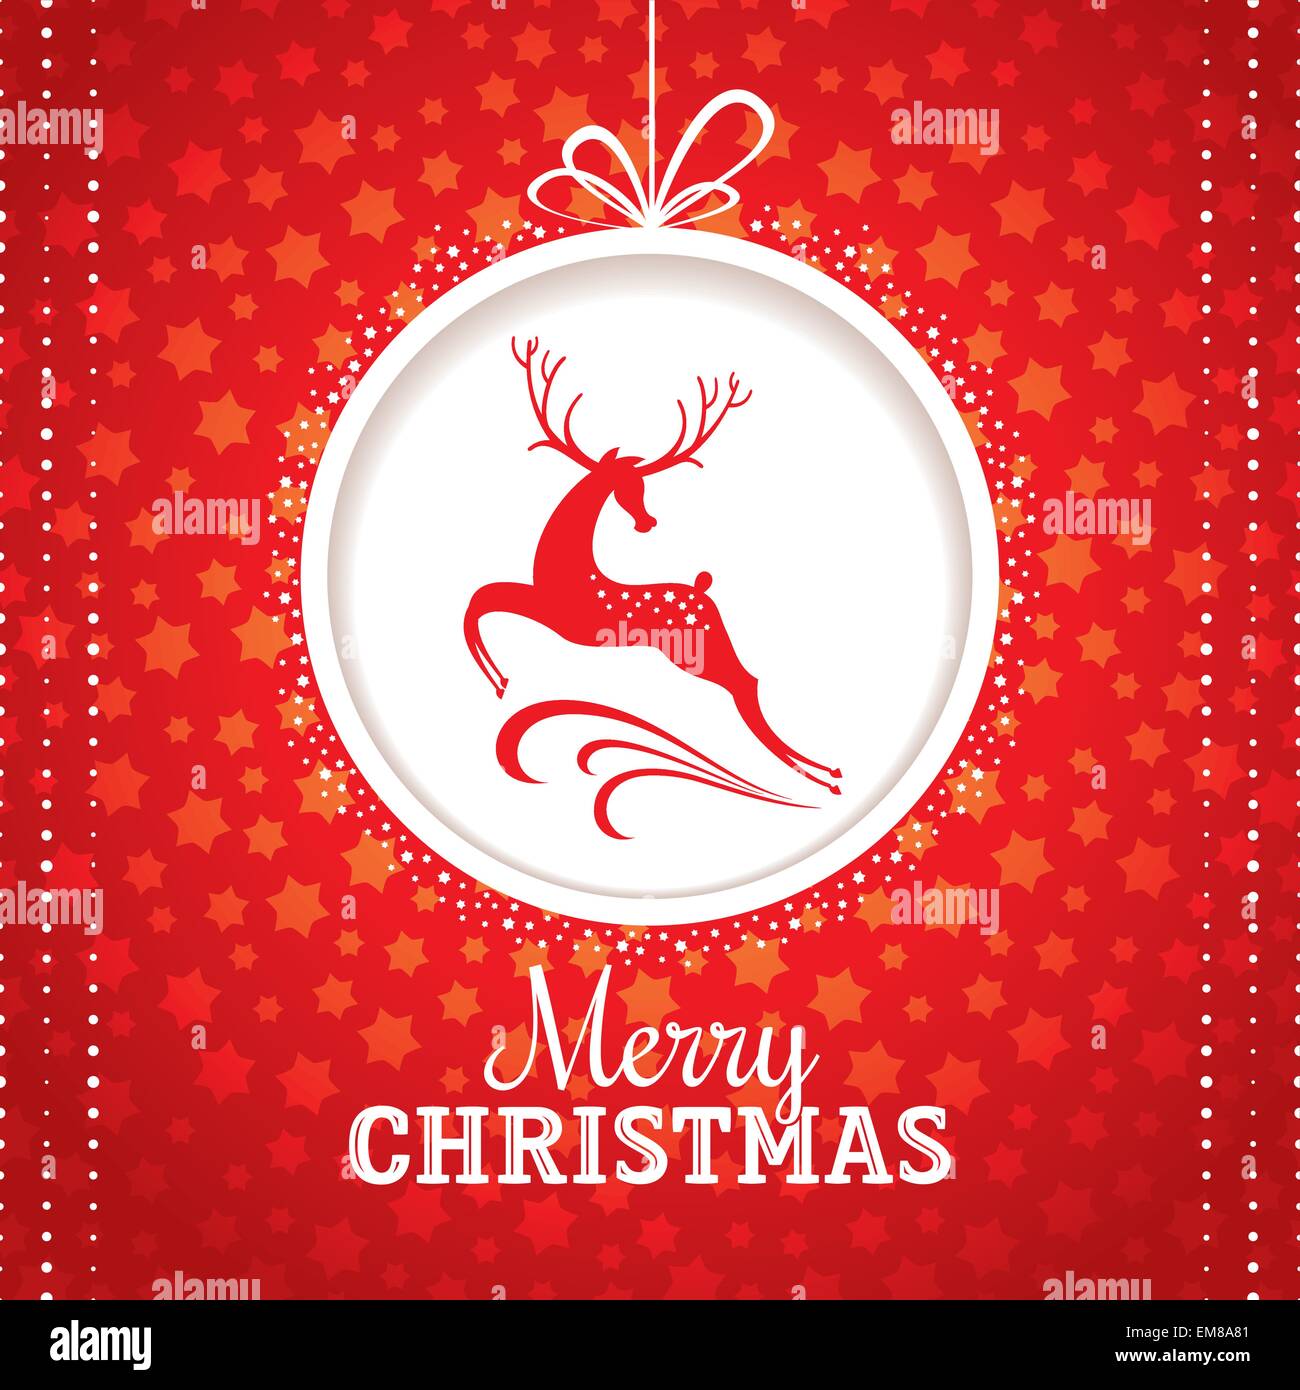 Weihnachtsgrußkarte mit Hirsch Stock Vektor